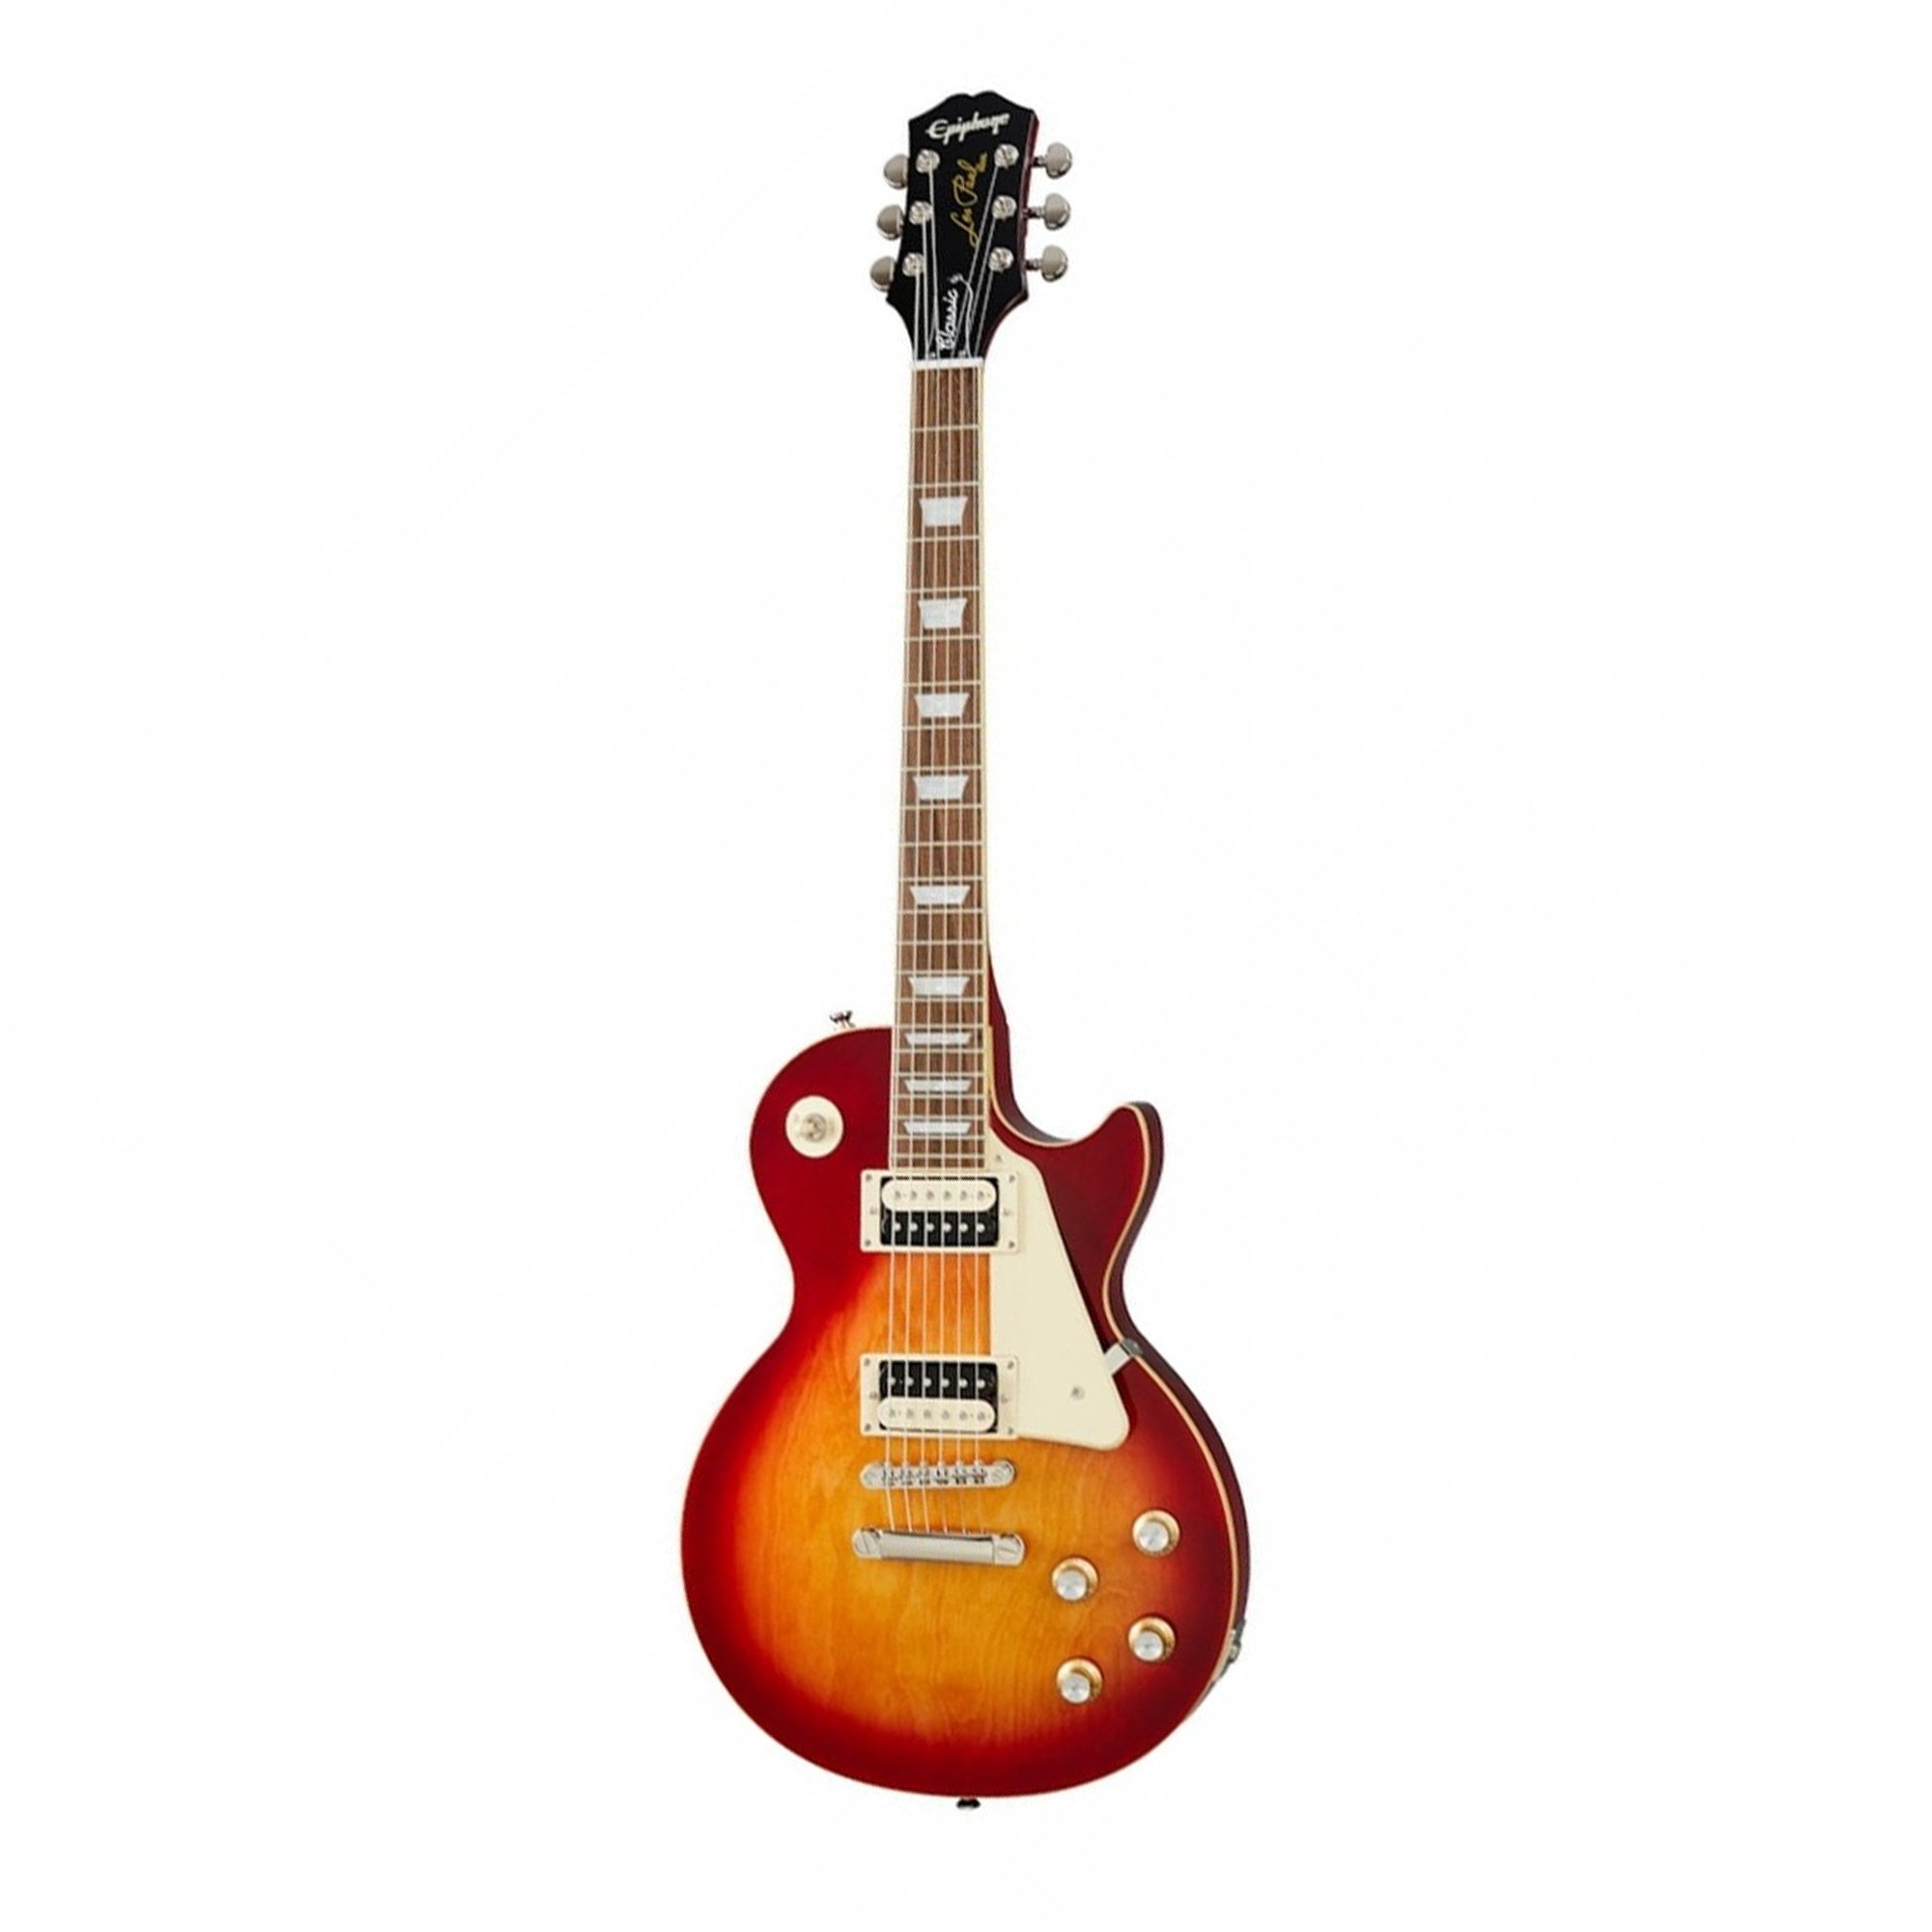 Epiphone EILOHSNH1 Les Paul Classic Heritage Cherry Sunburst Electric Guitar